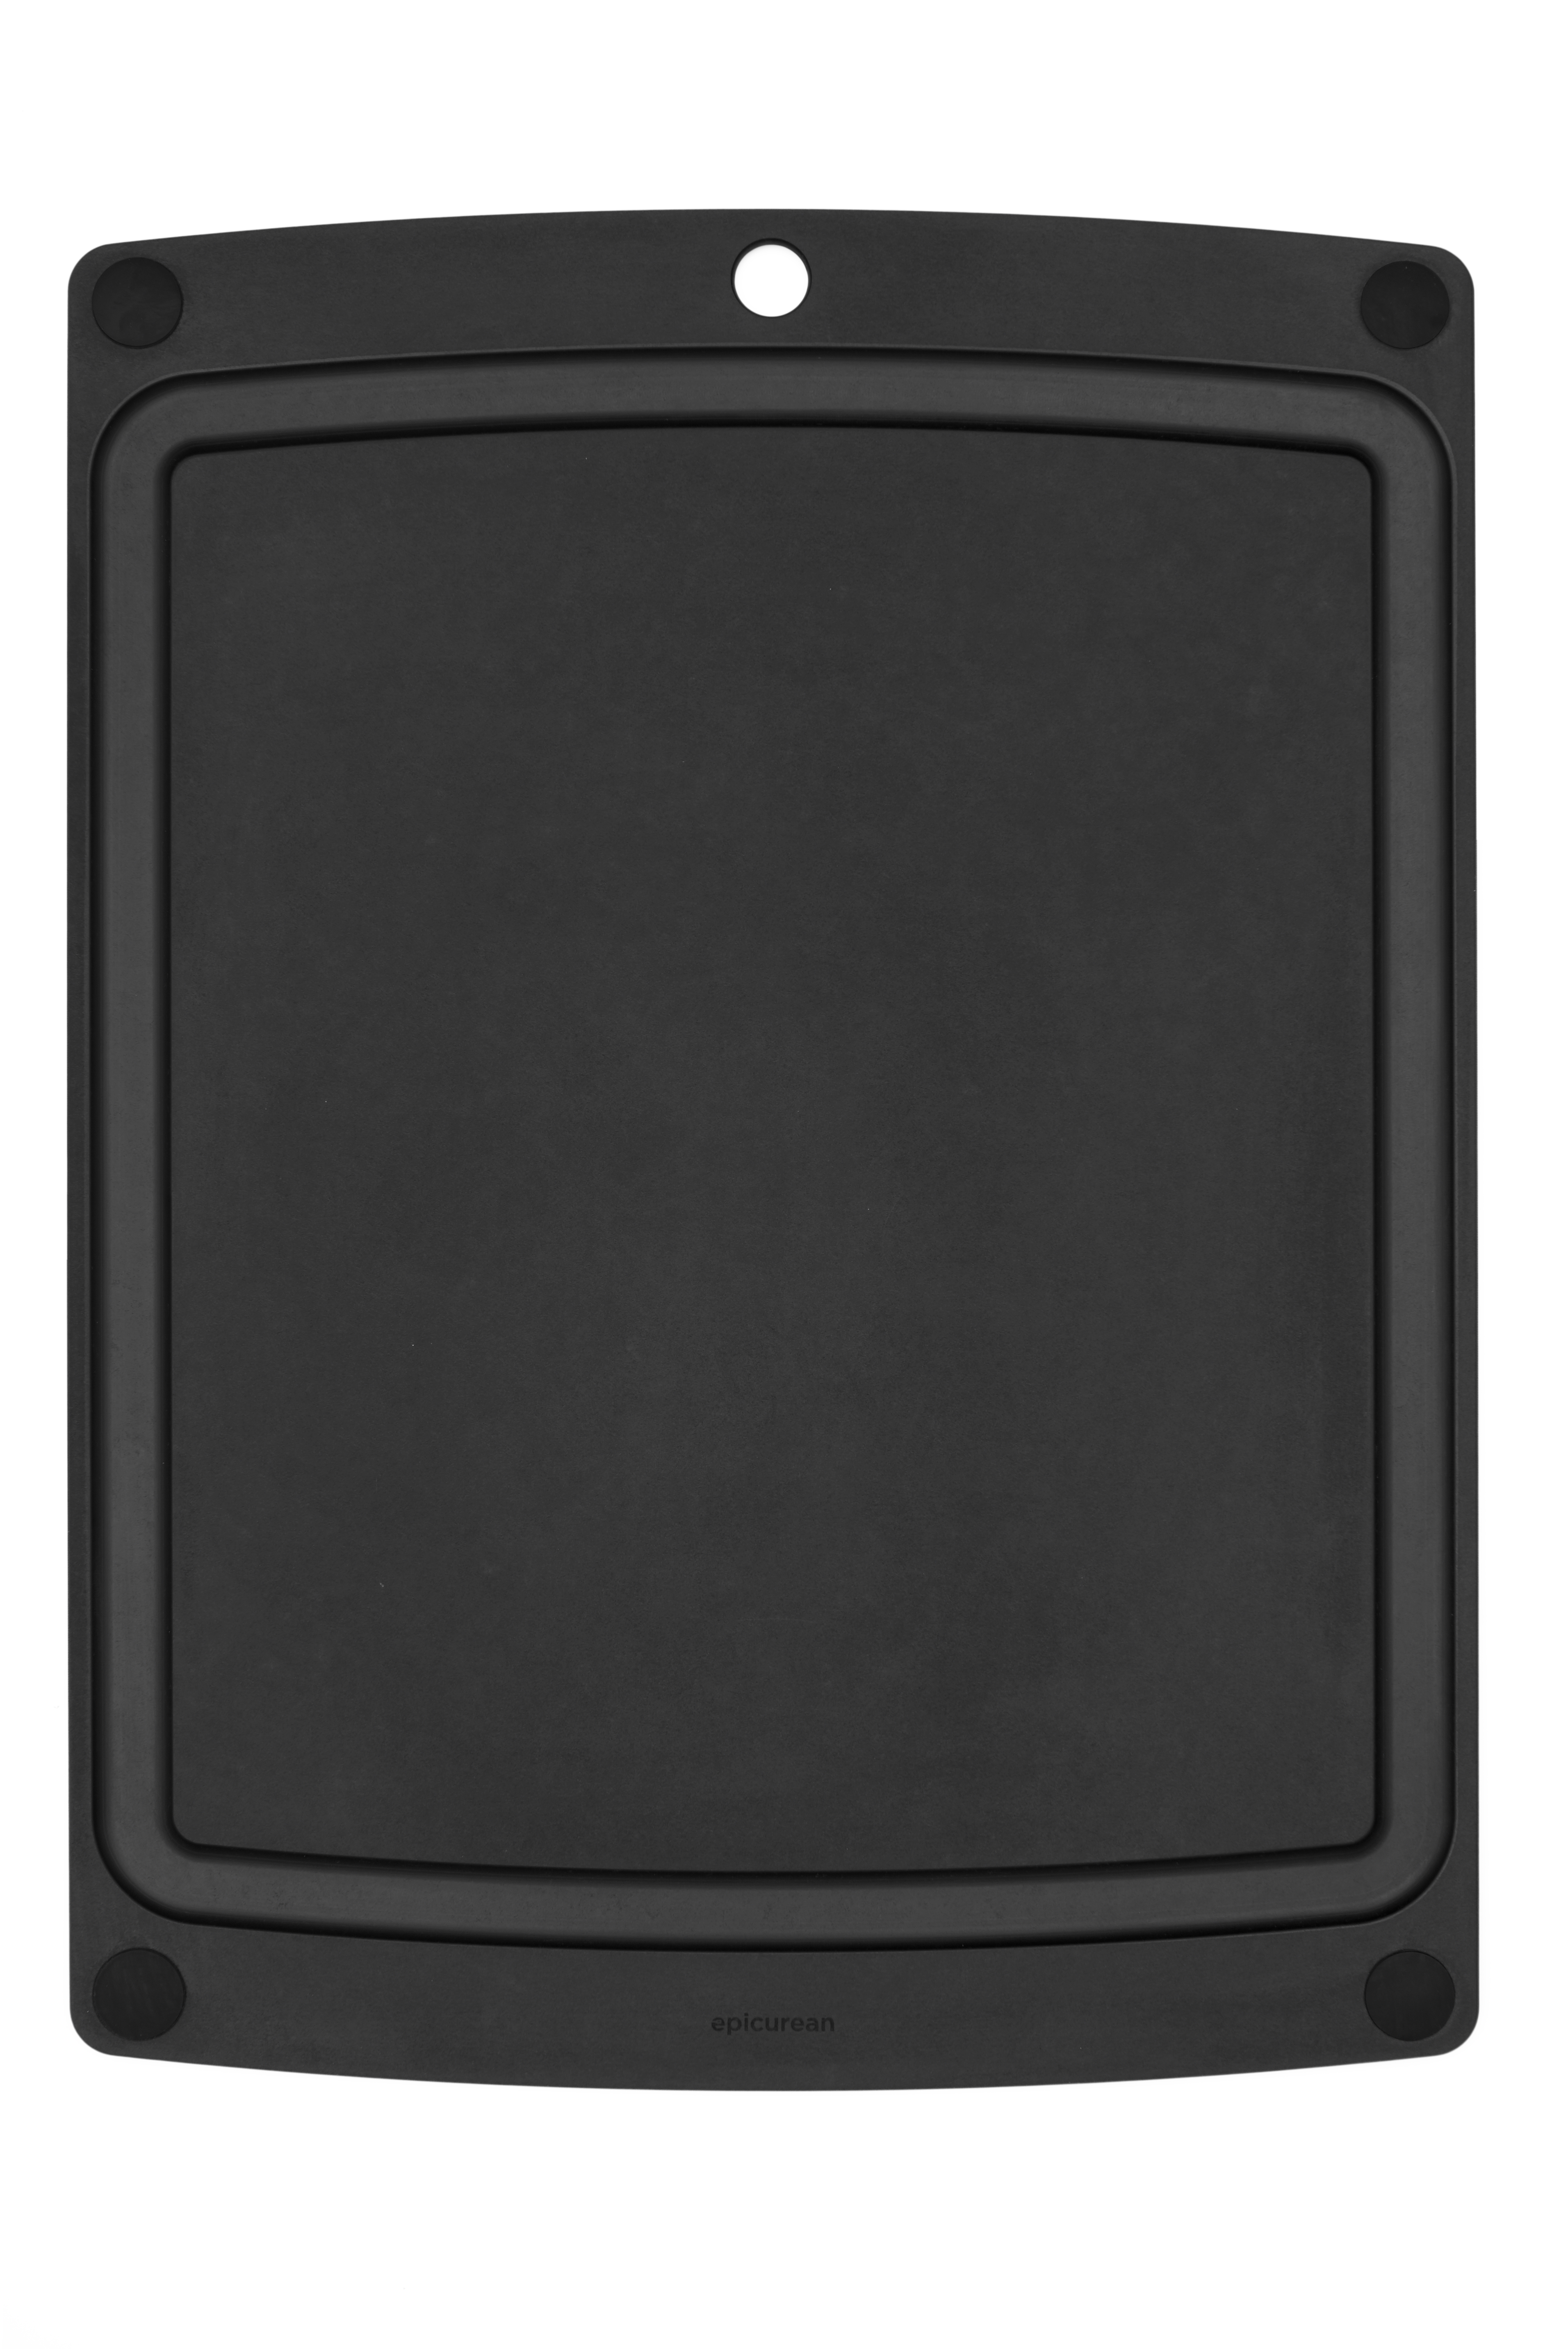 All-in-One Brett mit schwarzen Füssen, 50.8x38 cm, schwarz